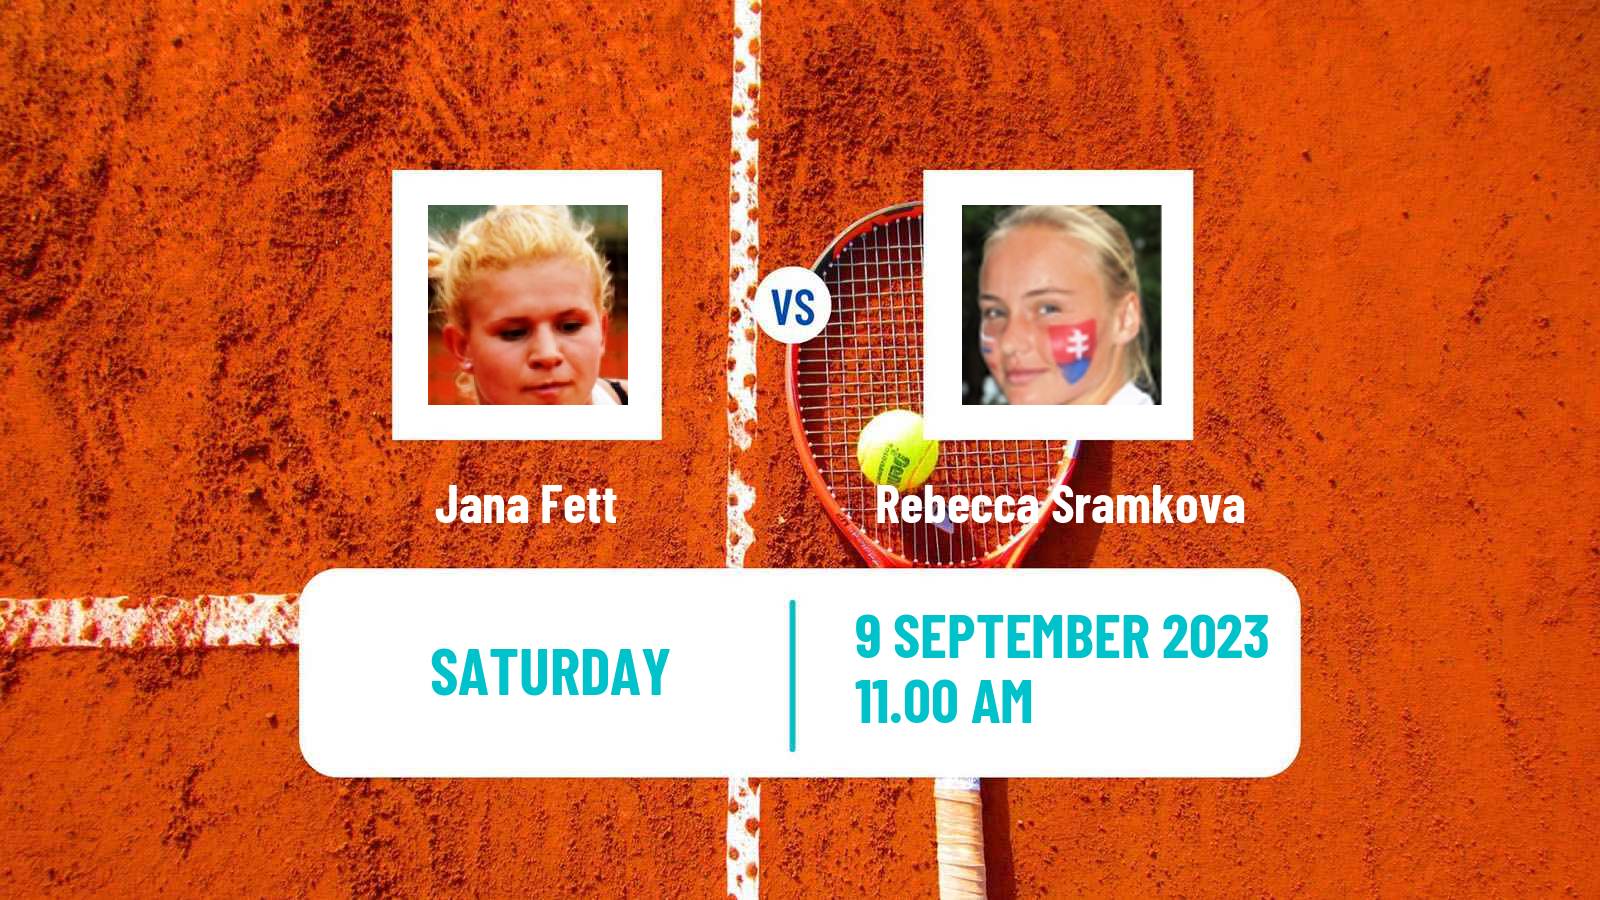 Tennis Bari Challenger Women Jana Fett - Rebecca Sramkova